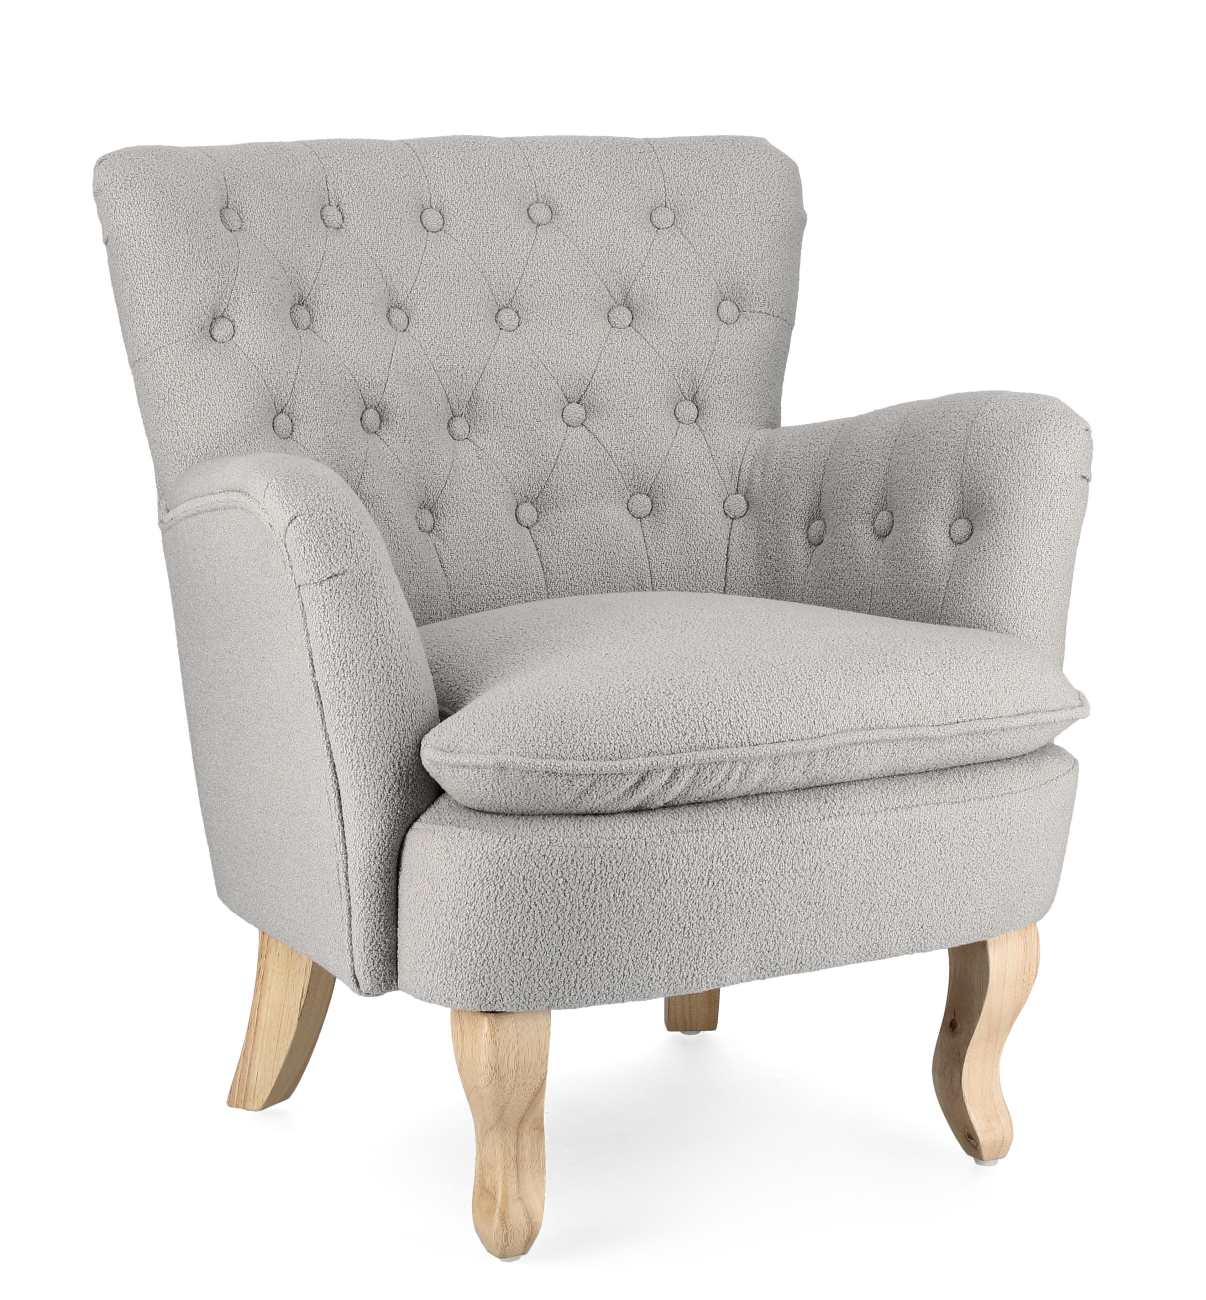 Der Sessel Orlins überzeugt mit seinem modernen Stil. Gefertigt wurde er aus Bouclè-Stoff, welcher einen grauen Farbton besitzt. Das Gestell ist aus Kiefernholz und hat eine natürliche Farbe. Der Sessel verfügt über eine Armlehne.